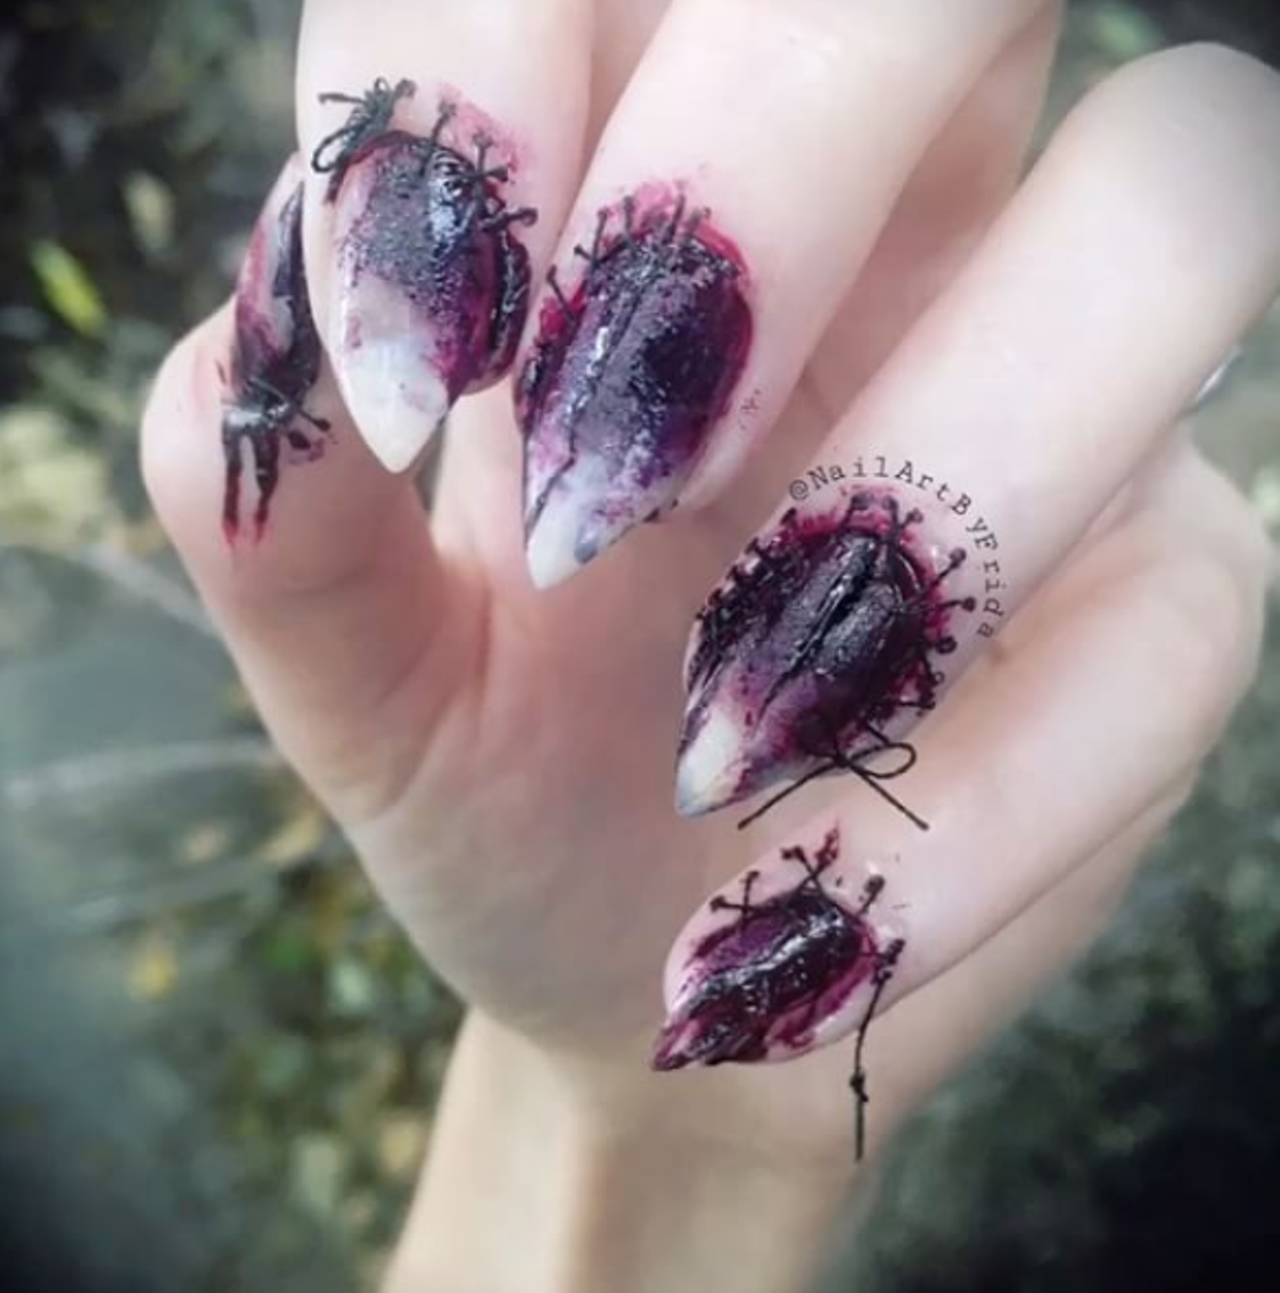 @nailartbyfreida has these nails in stitches